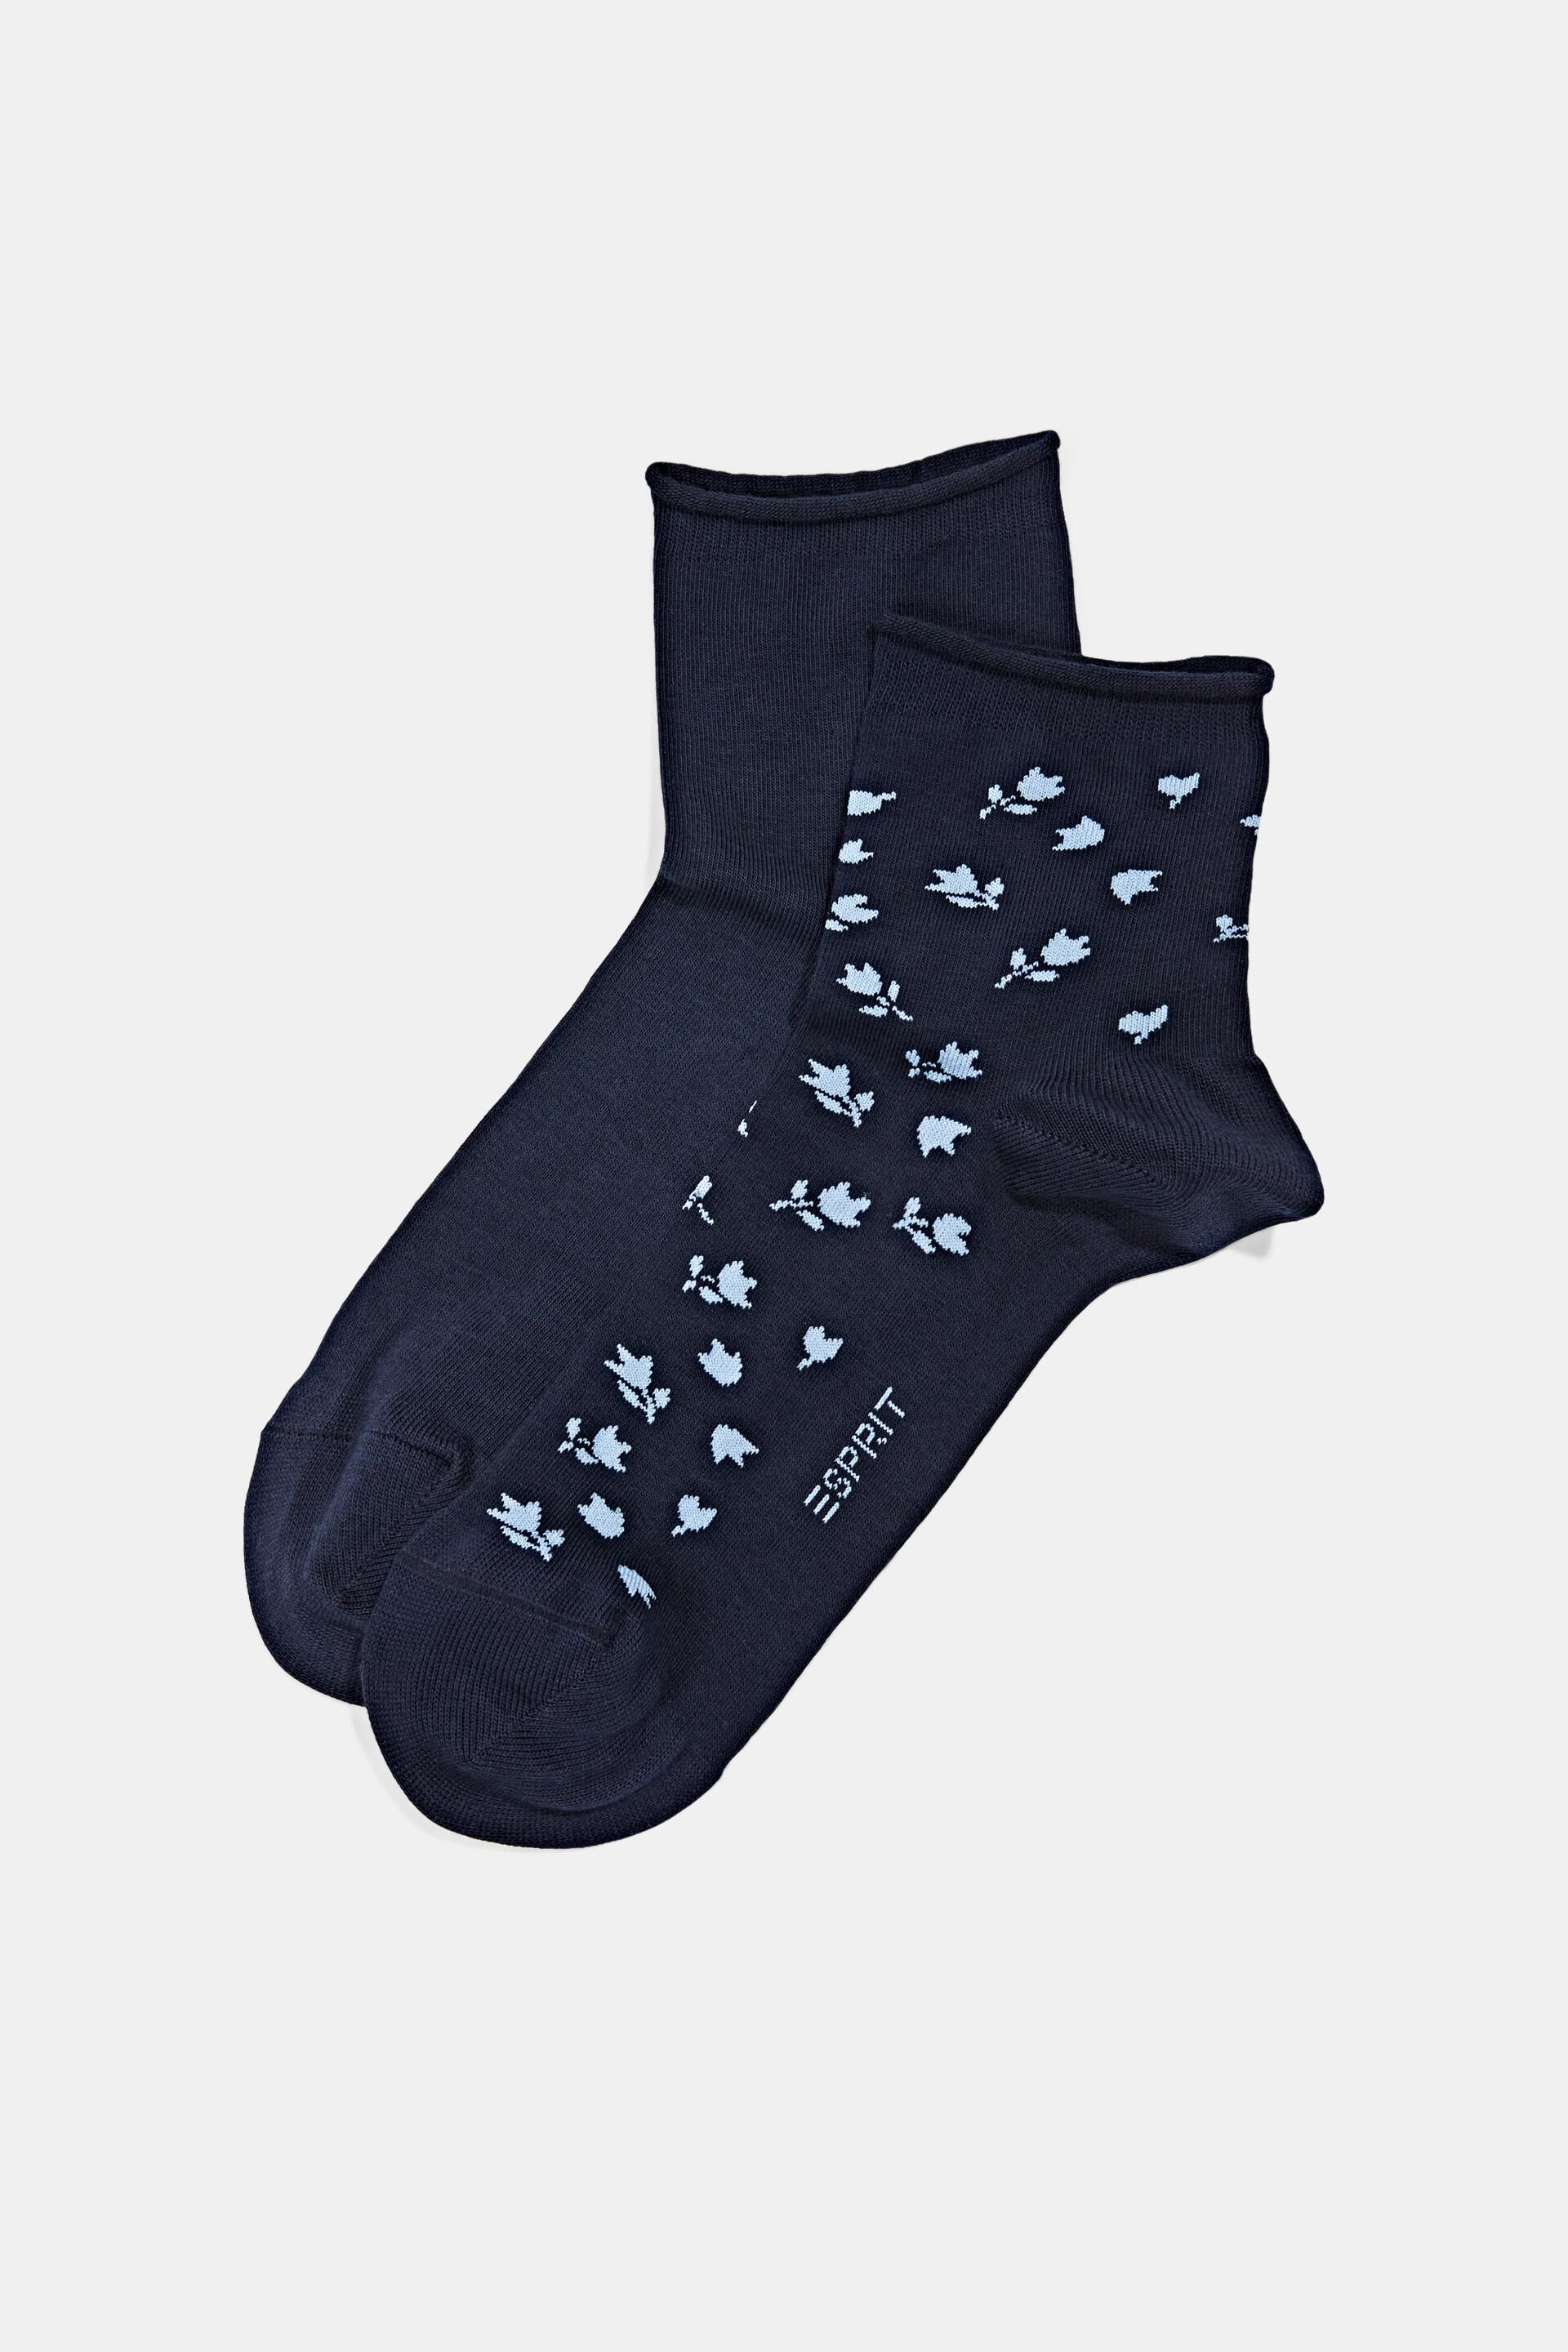 Esprit Blumenmuster 2er-Pack mit Socken kurze